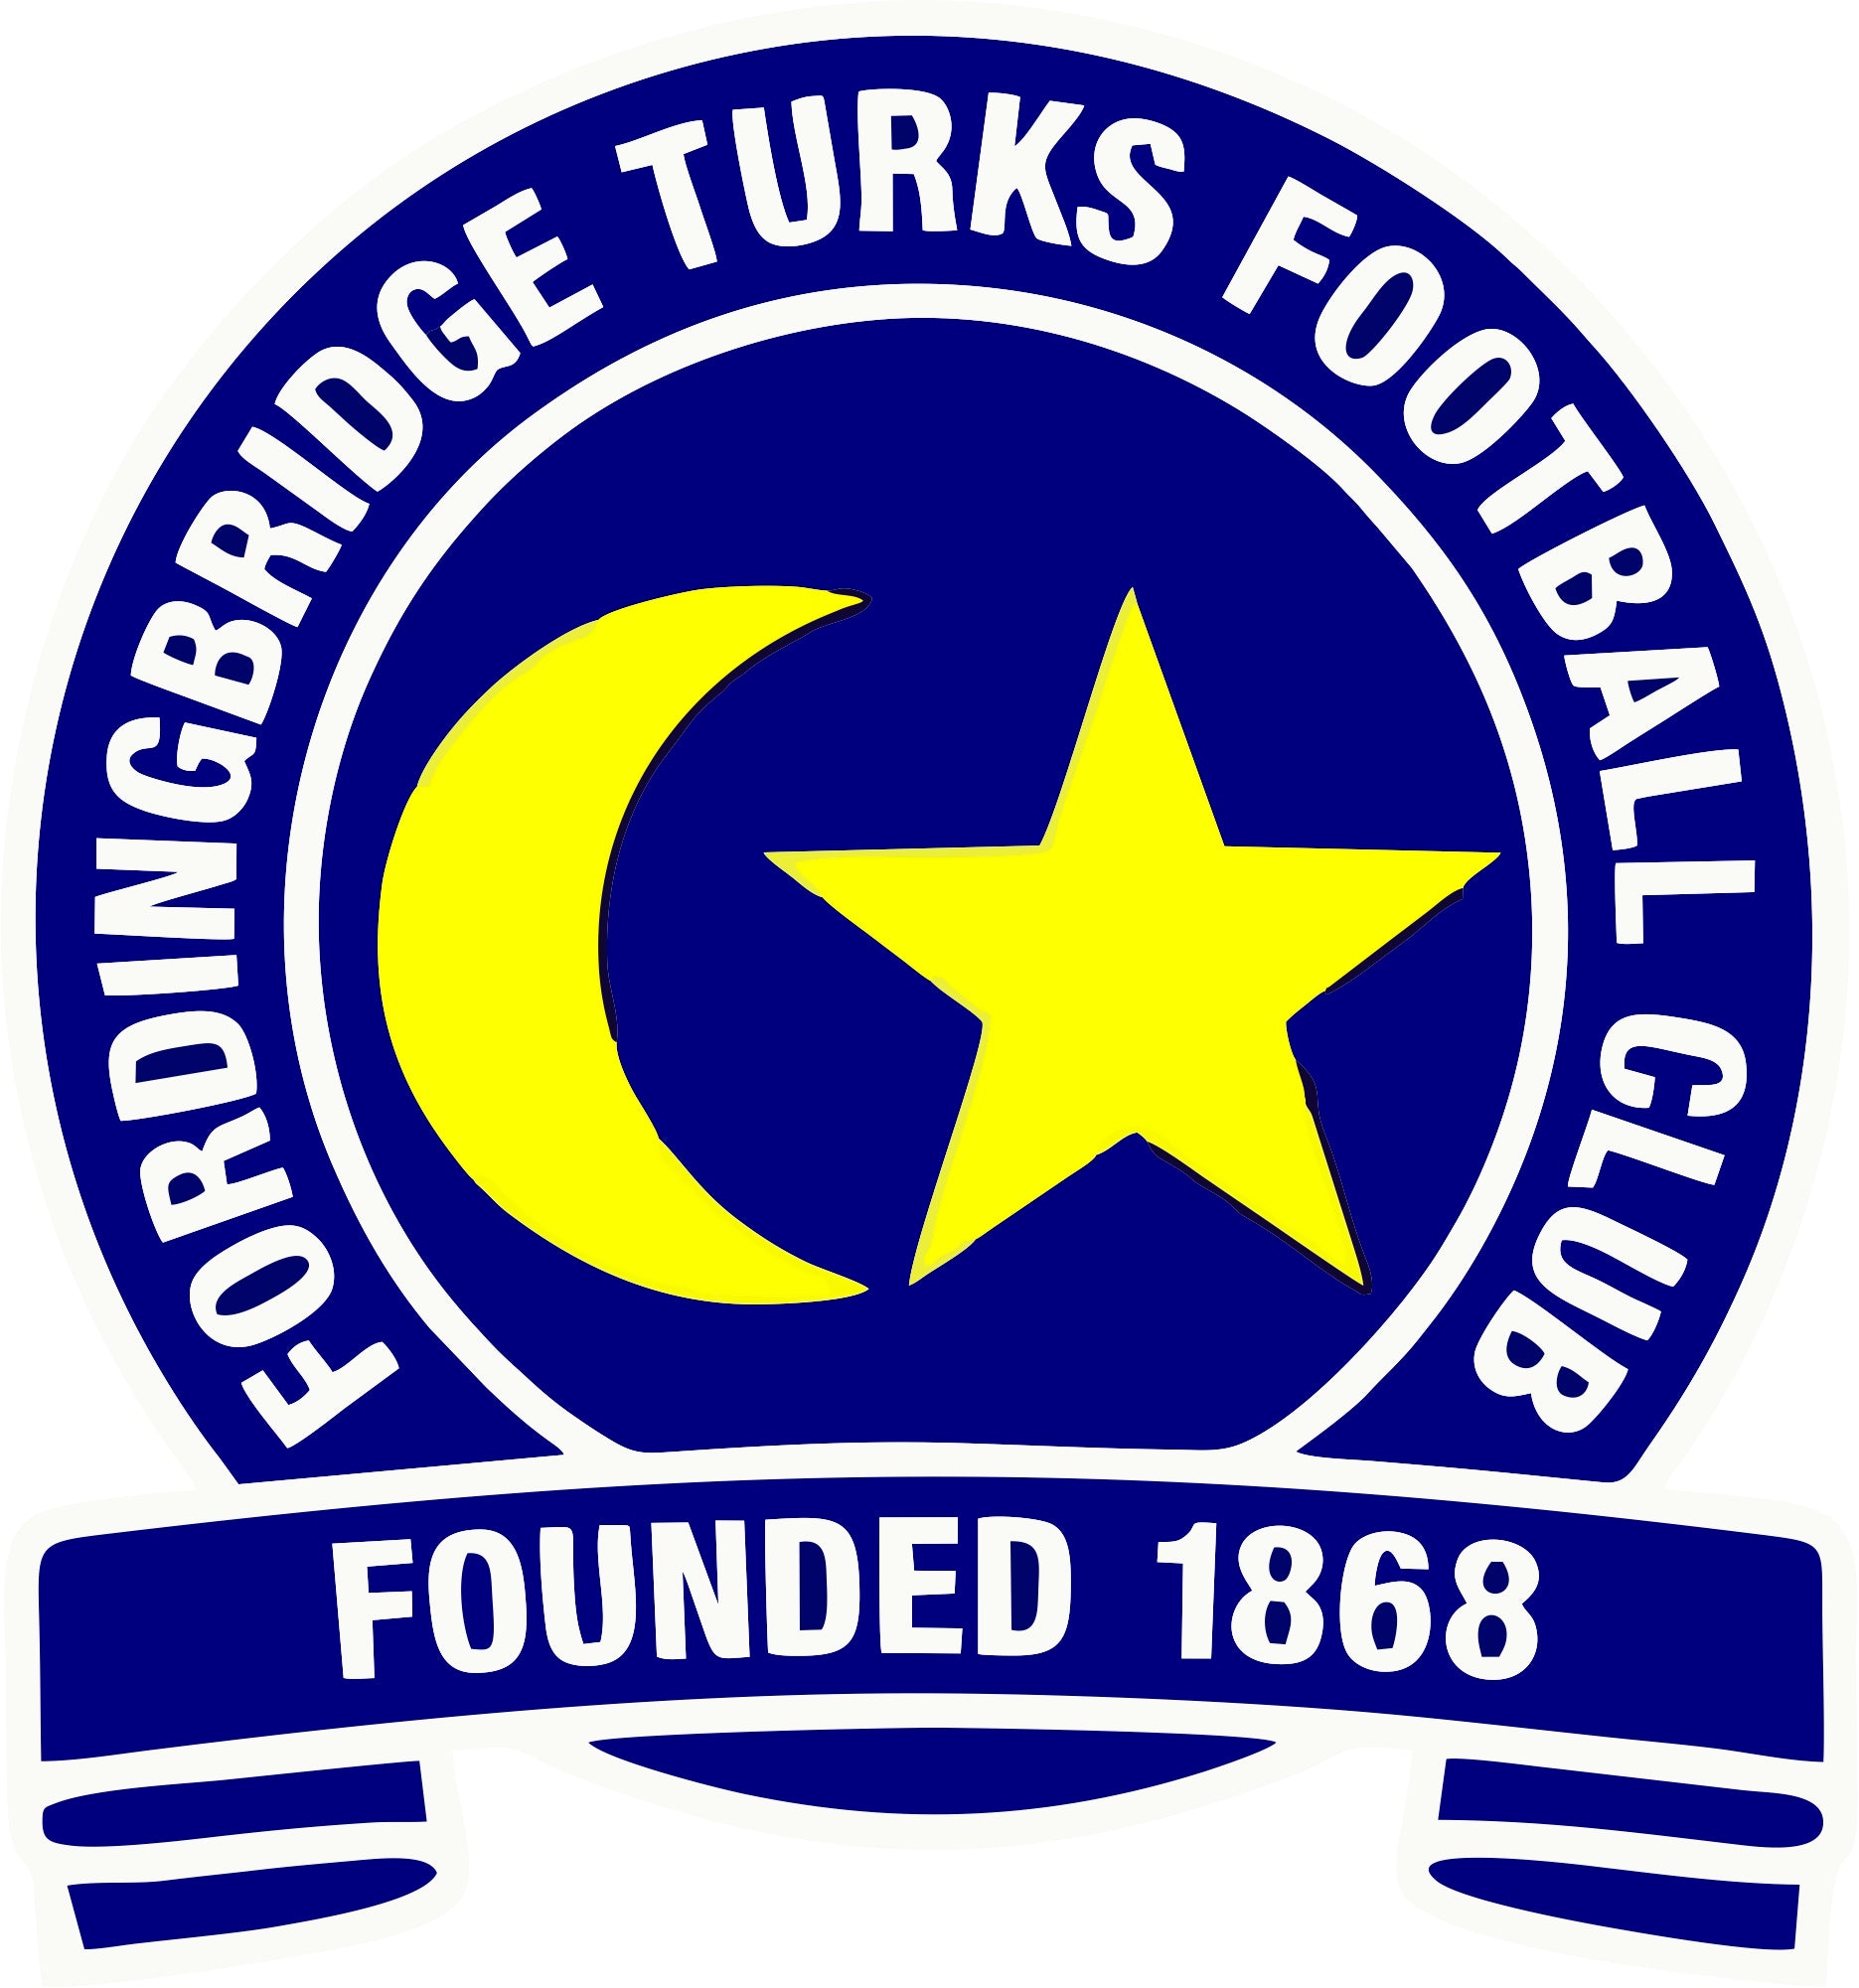 Fordingbridge Turks